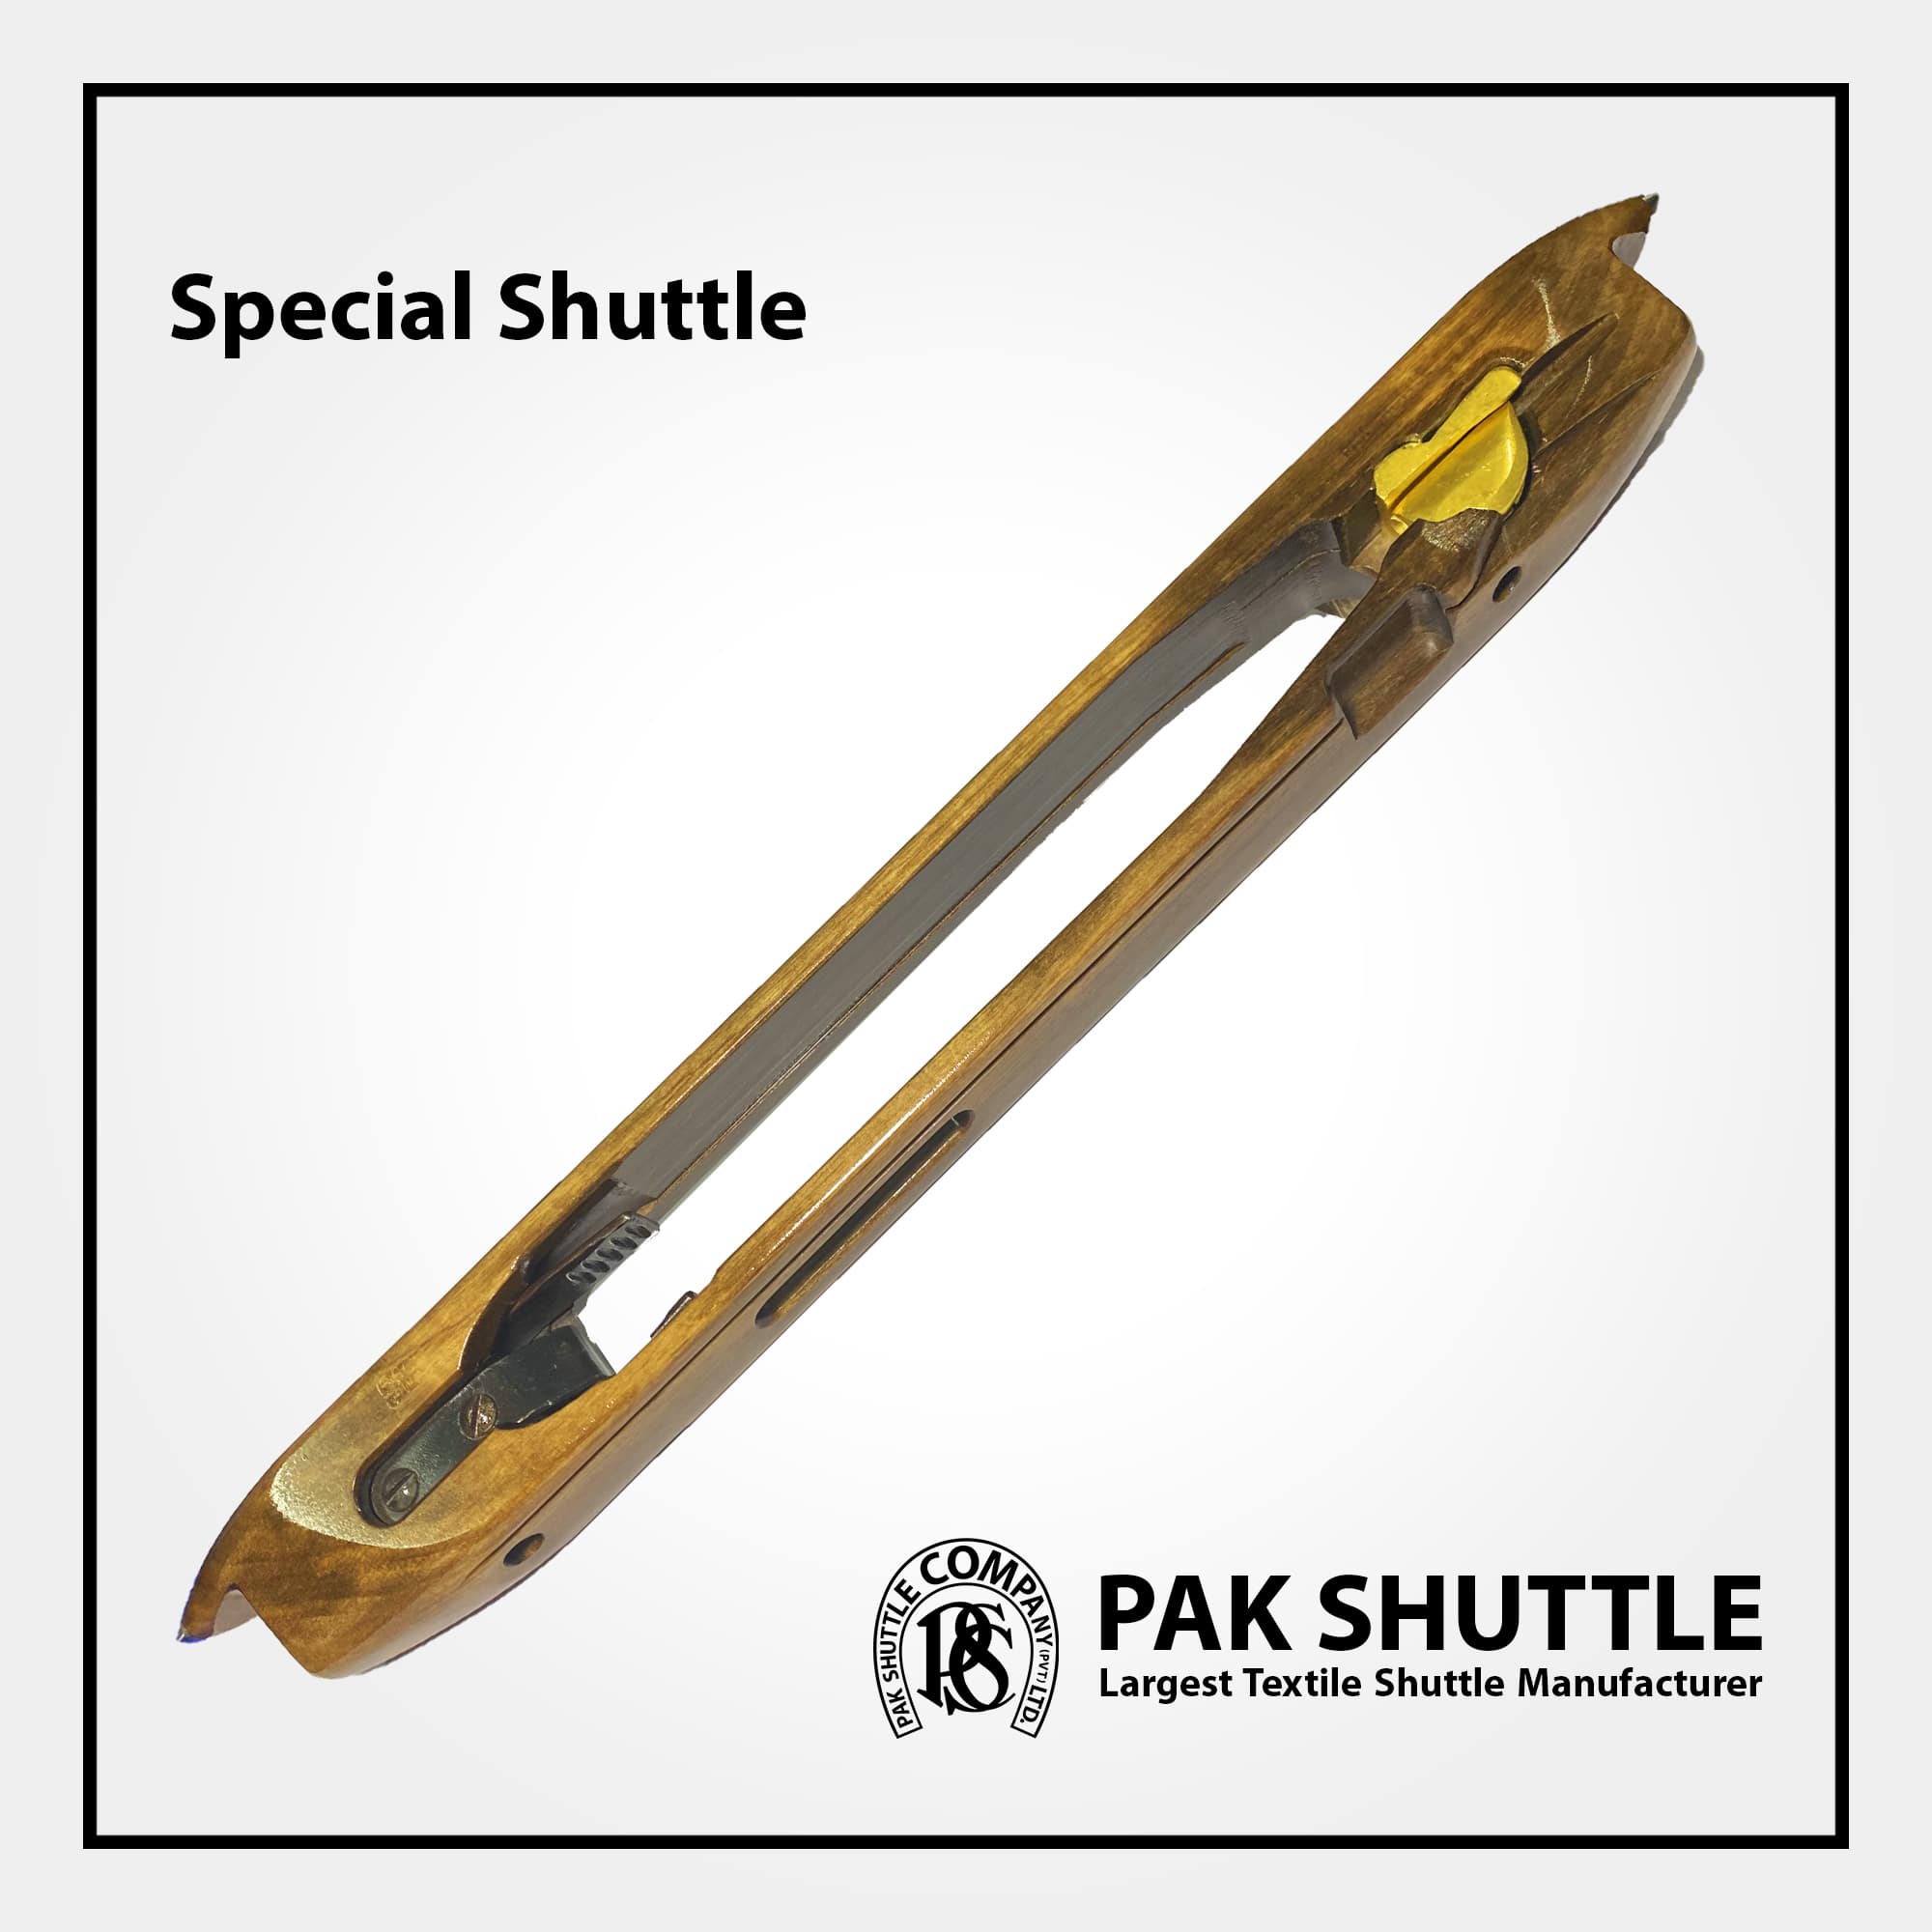 Special Shuttle by Pak Shuttle Company Pvt Ltd.